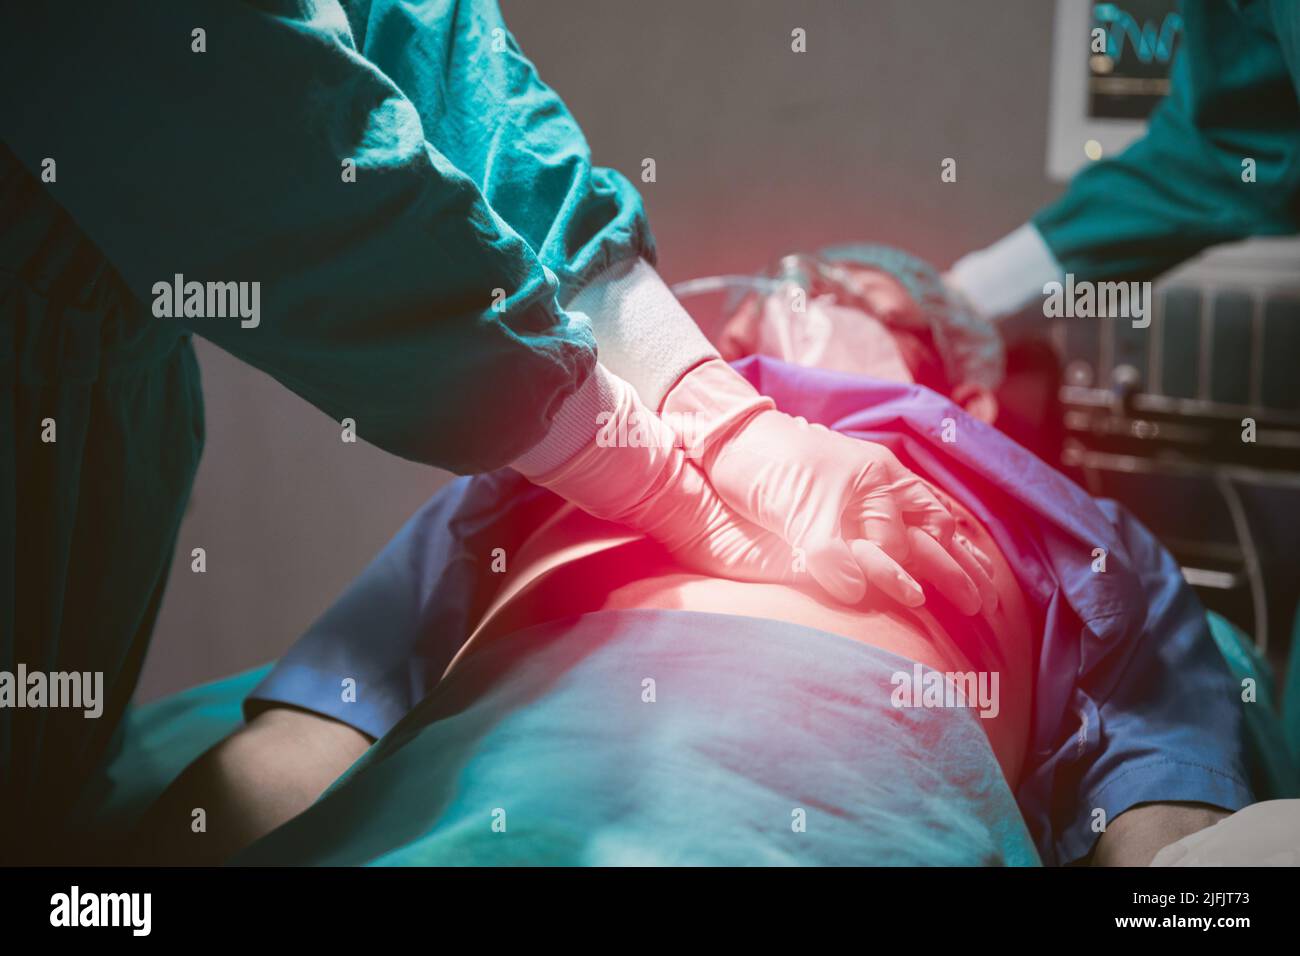 Medizinisches Team, das Menschen im Krankenhaus das Leben rettet. Arzt erste Hilfe Notfall HLW Patienten Herzinsuffizienz. Stockfoto